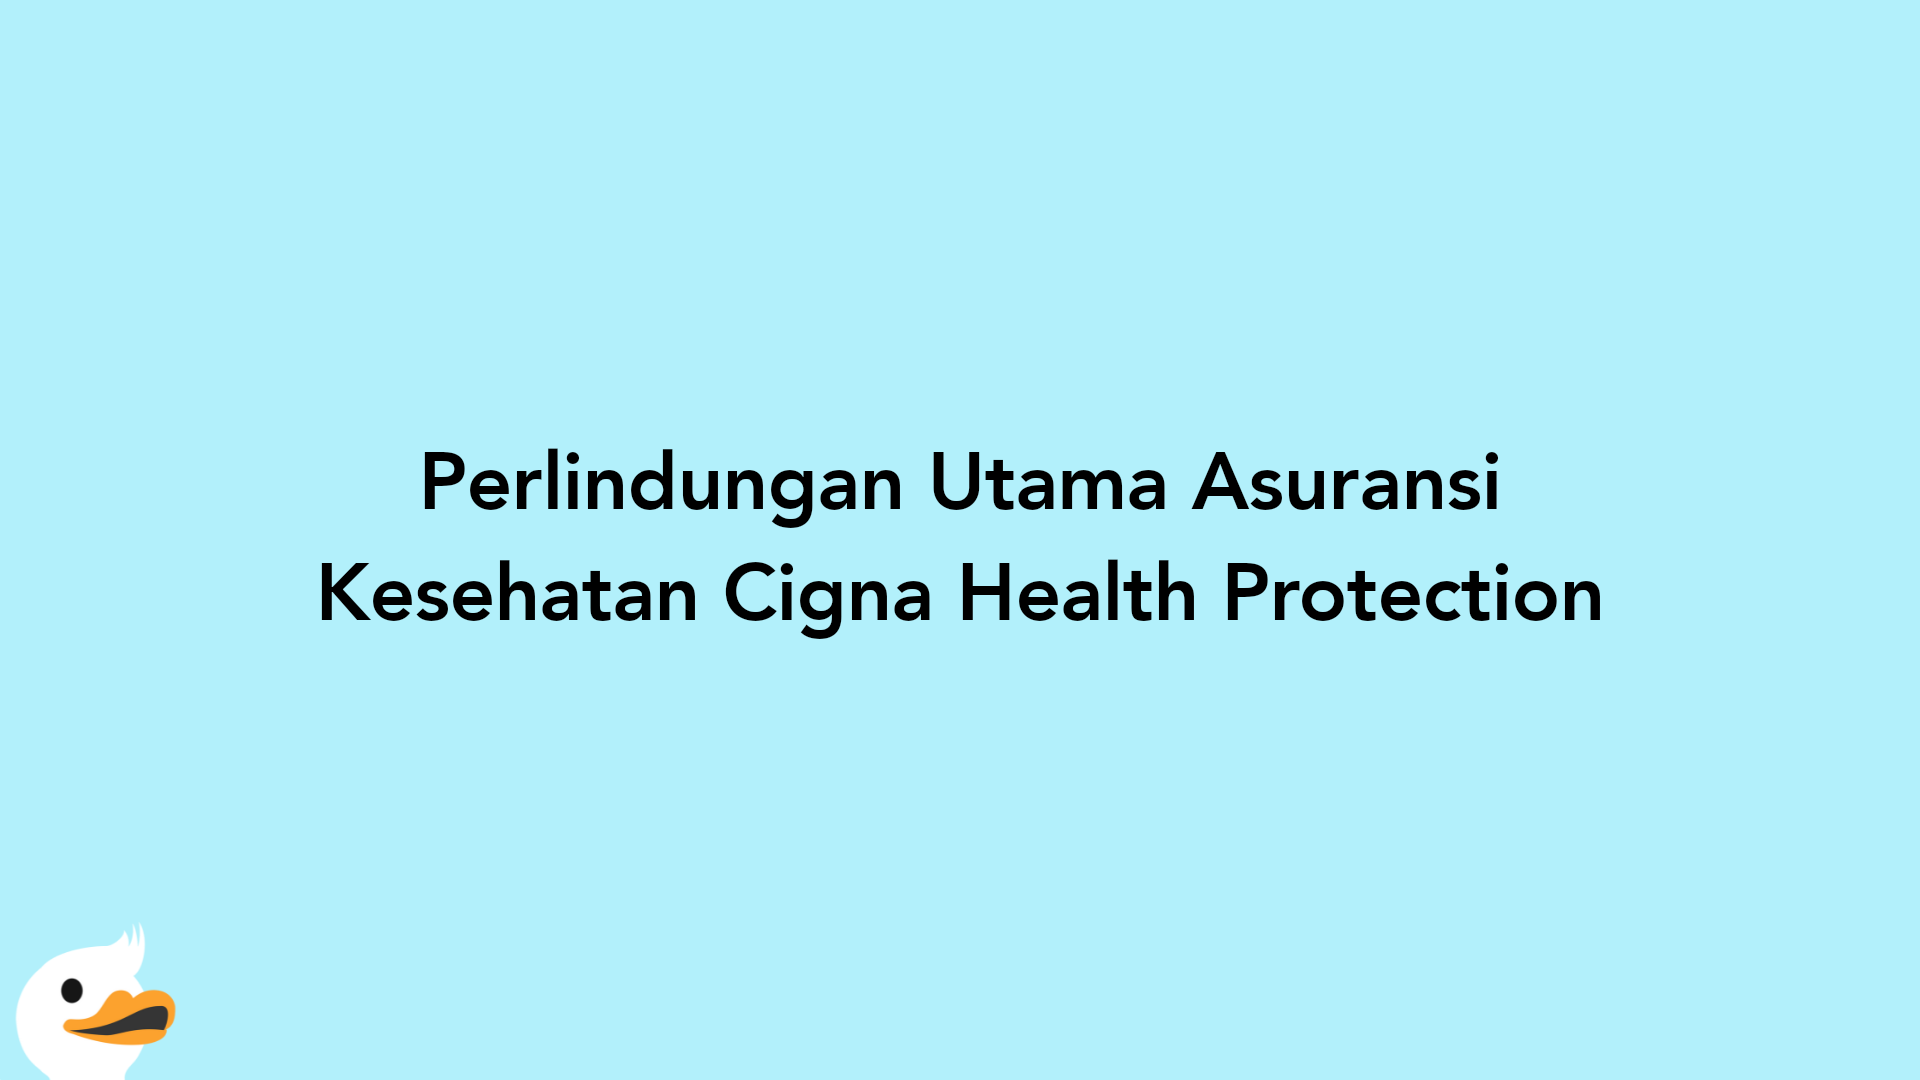 Perlindungan Utama Asuransi Kesehatan Cigna Health Protection